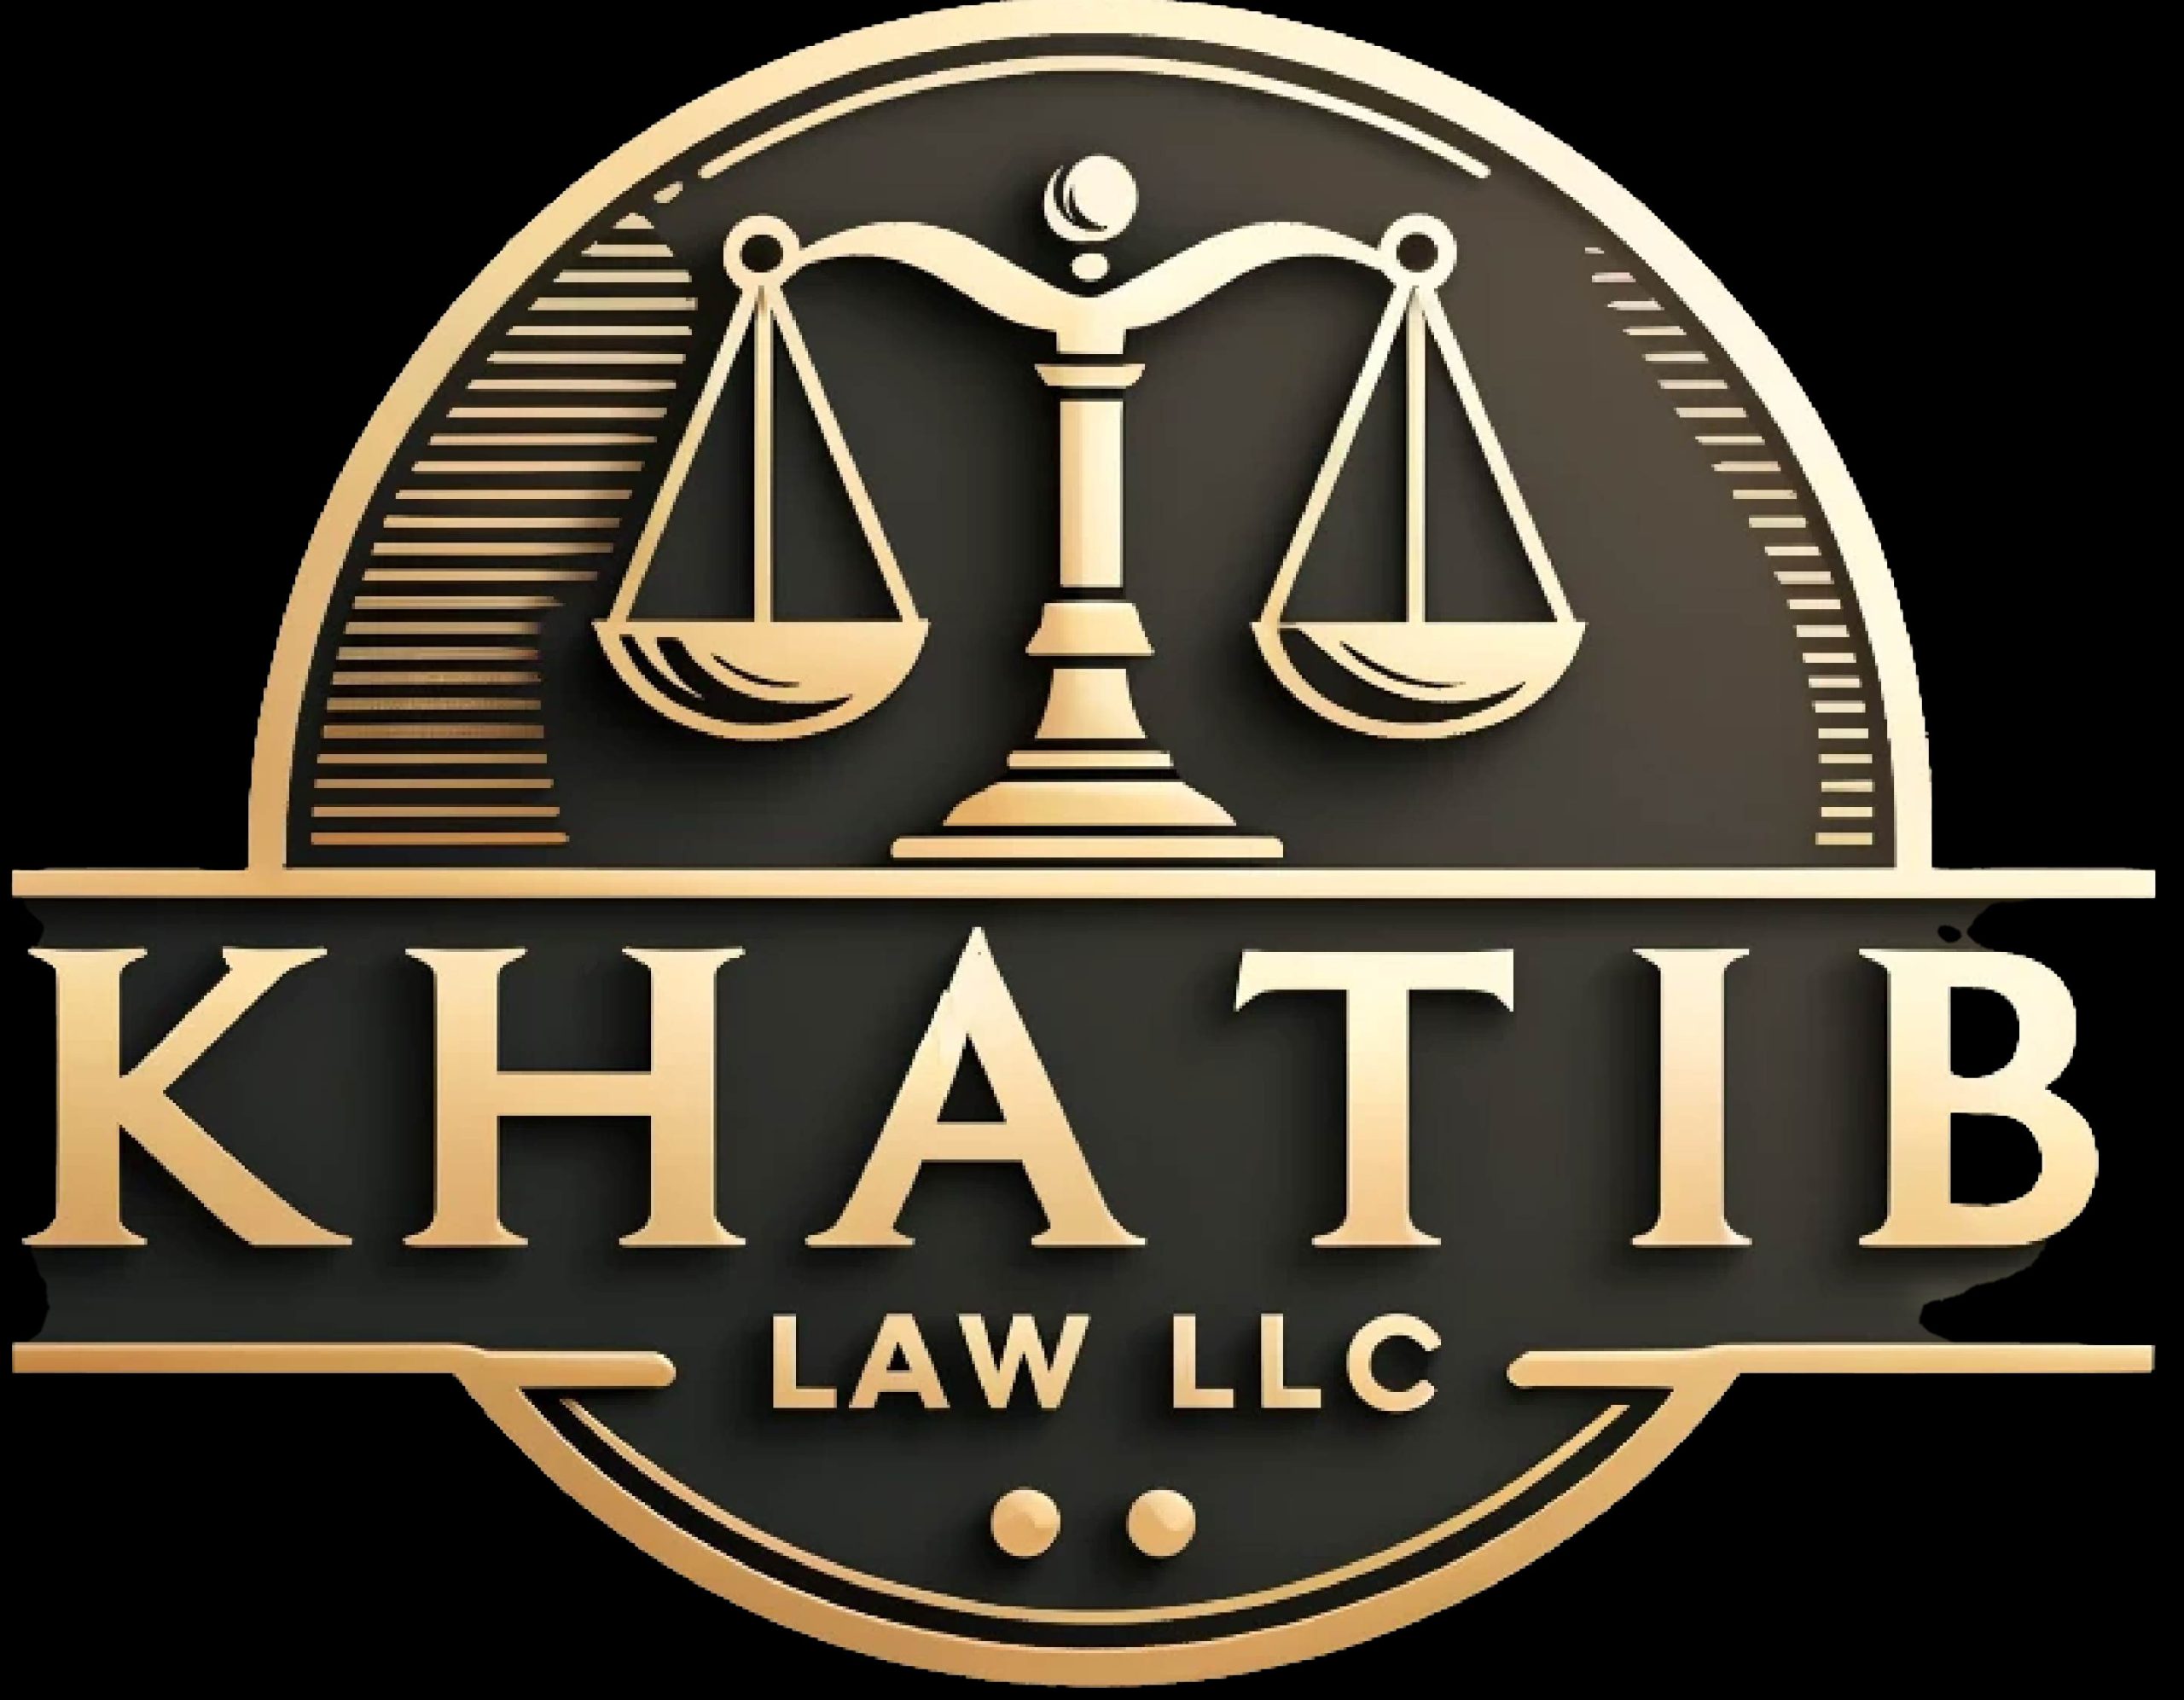 Khatib Law LLC